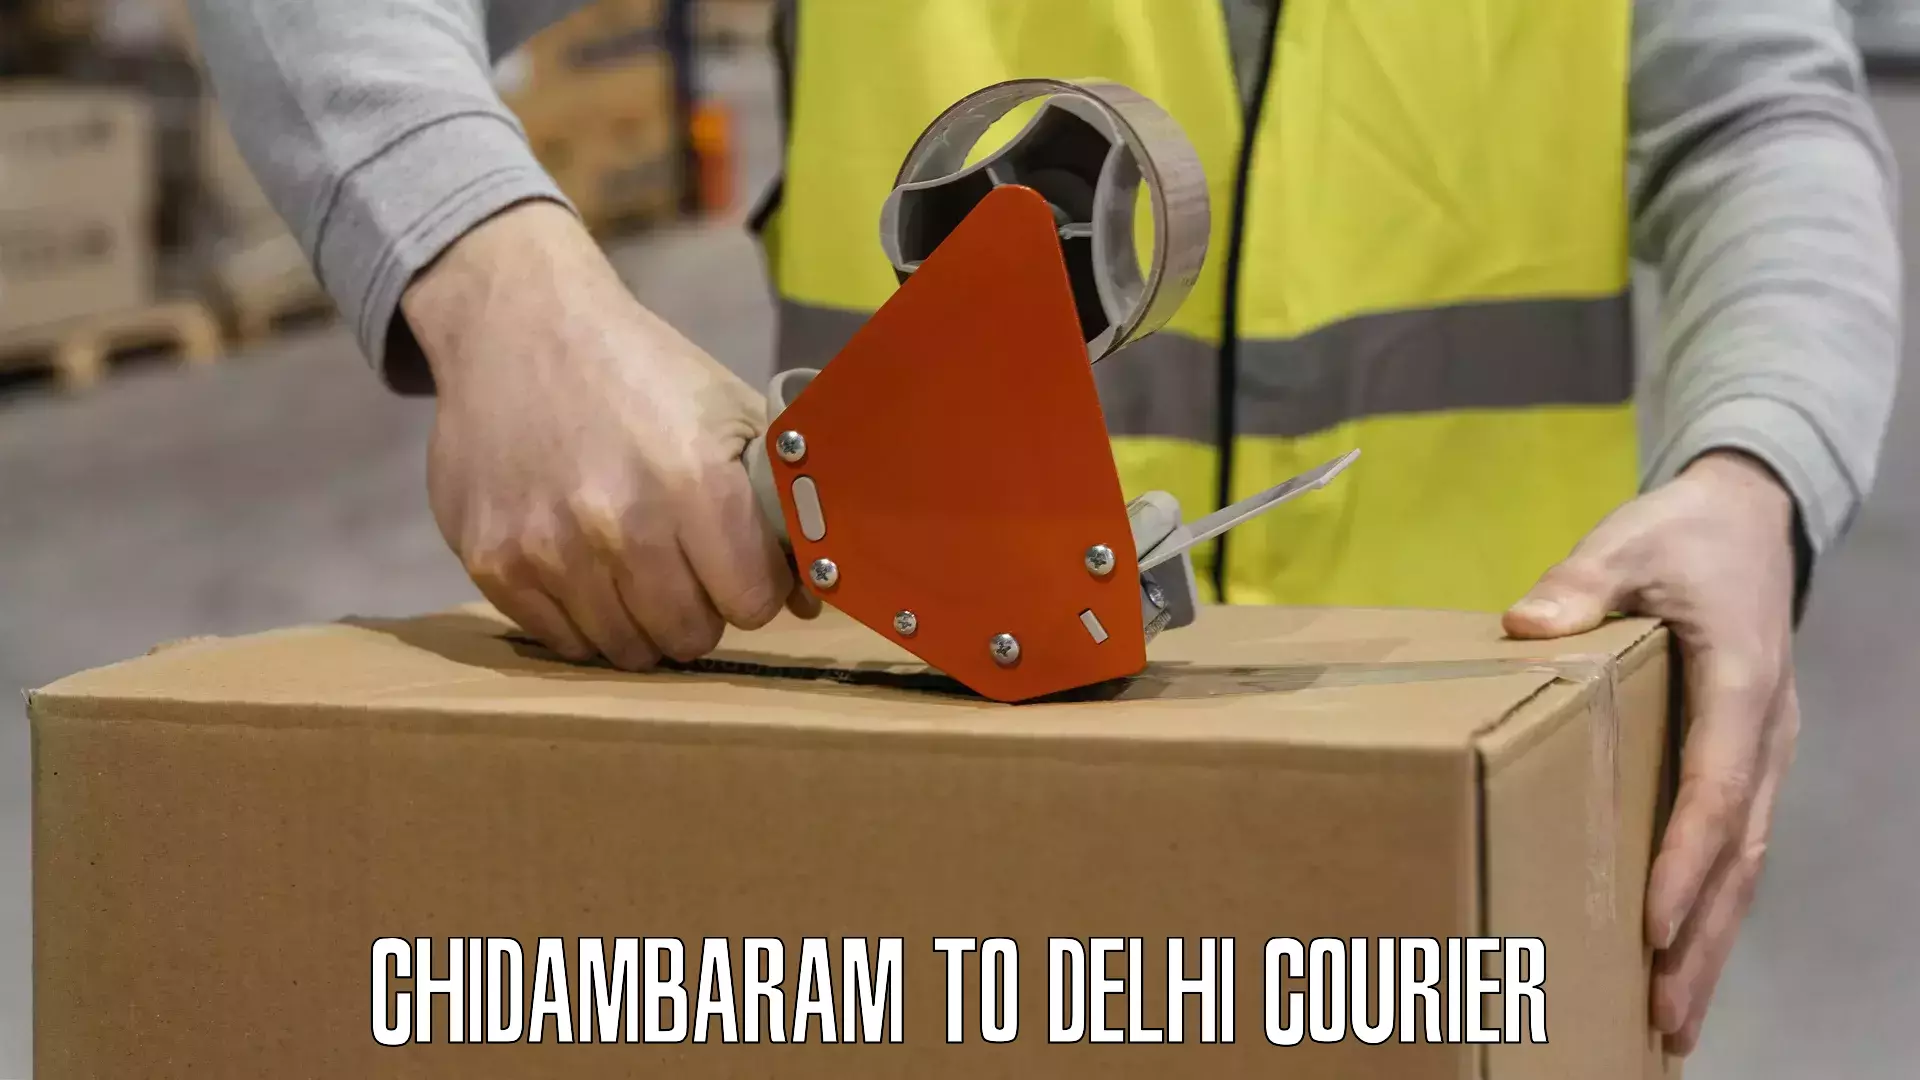 Multi-service courier options Chidambaram to Delhi